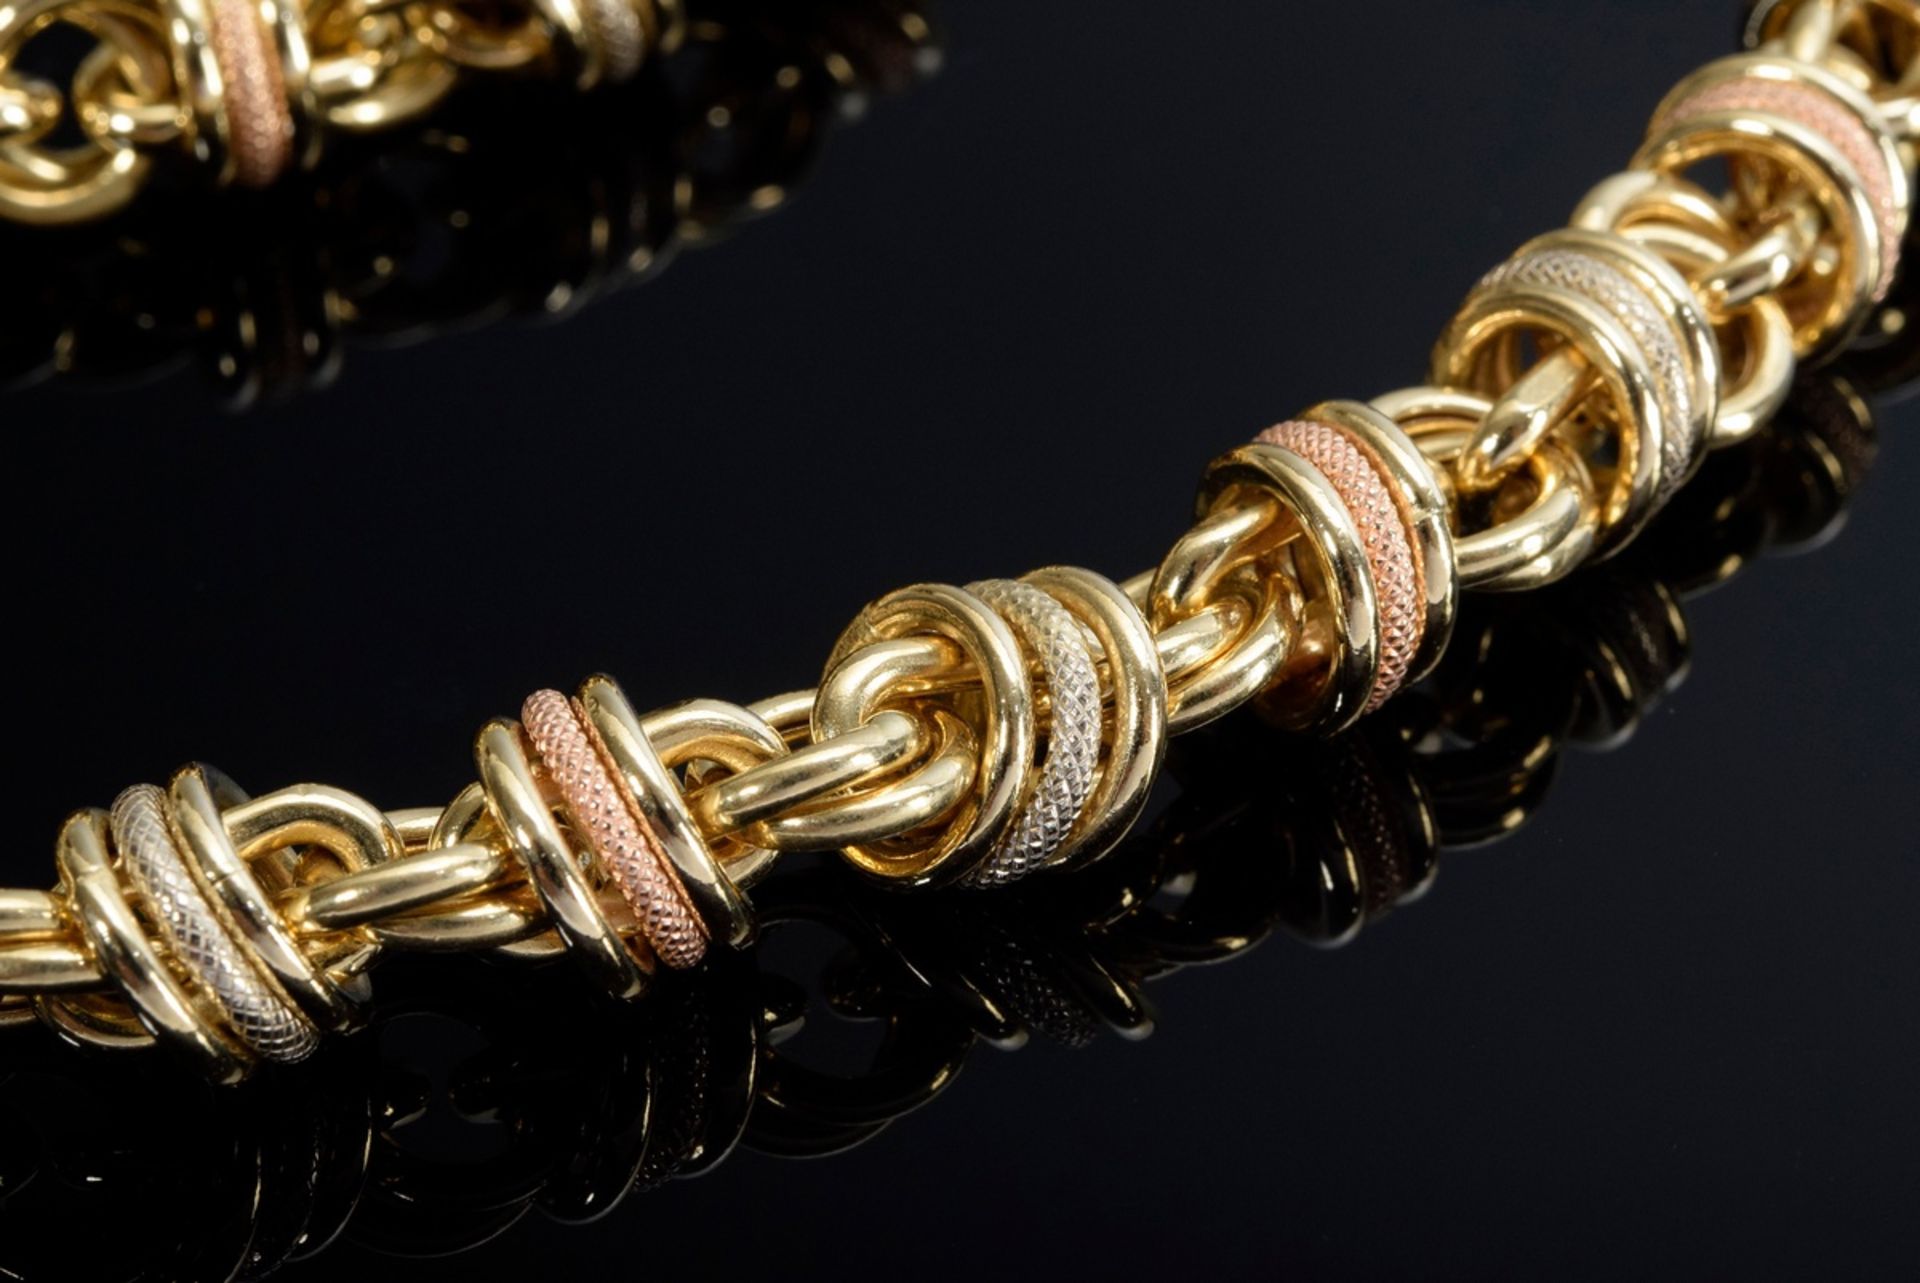 2 Teile diverser Tricolor Gold 750 Schmuck aus sich beweglichen Ringen: Collier (L. 45cm) und Armba - Bild 2 aus 3